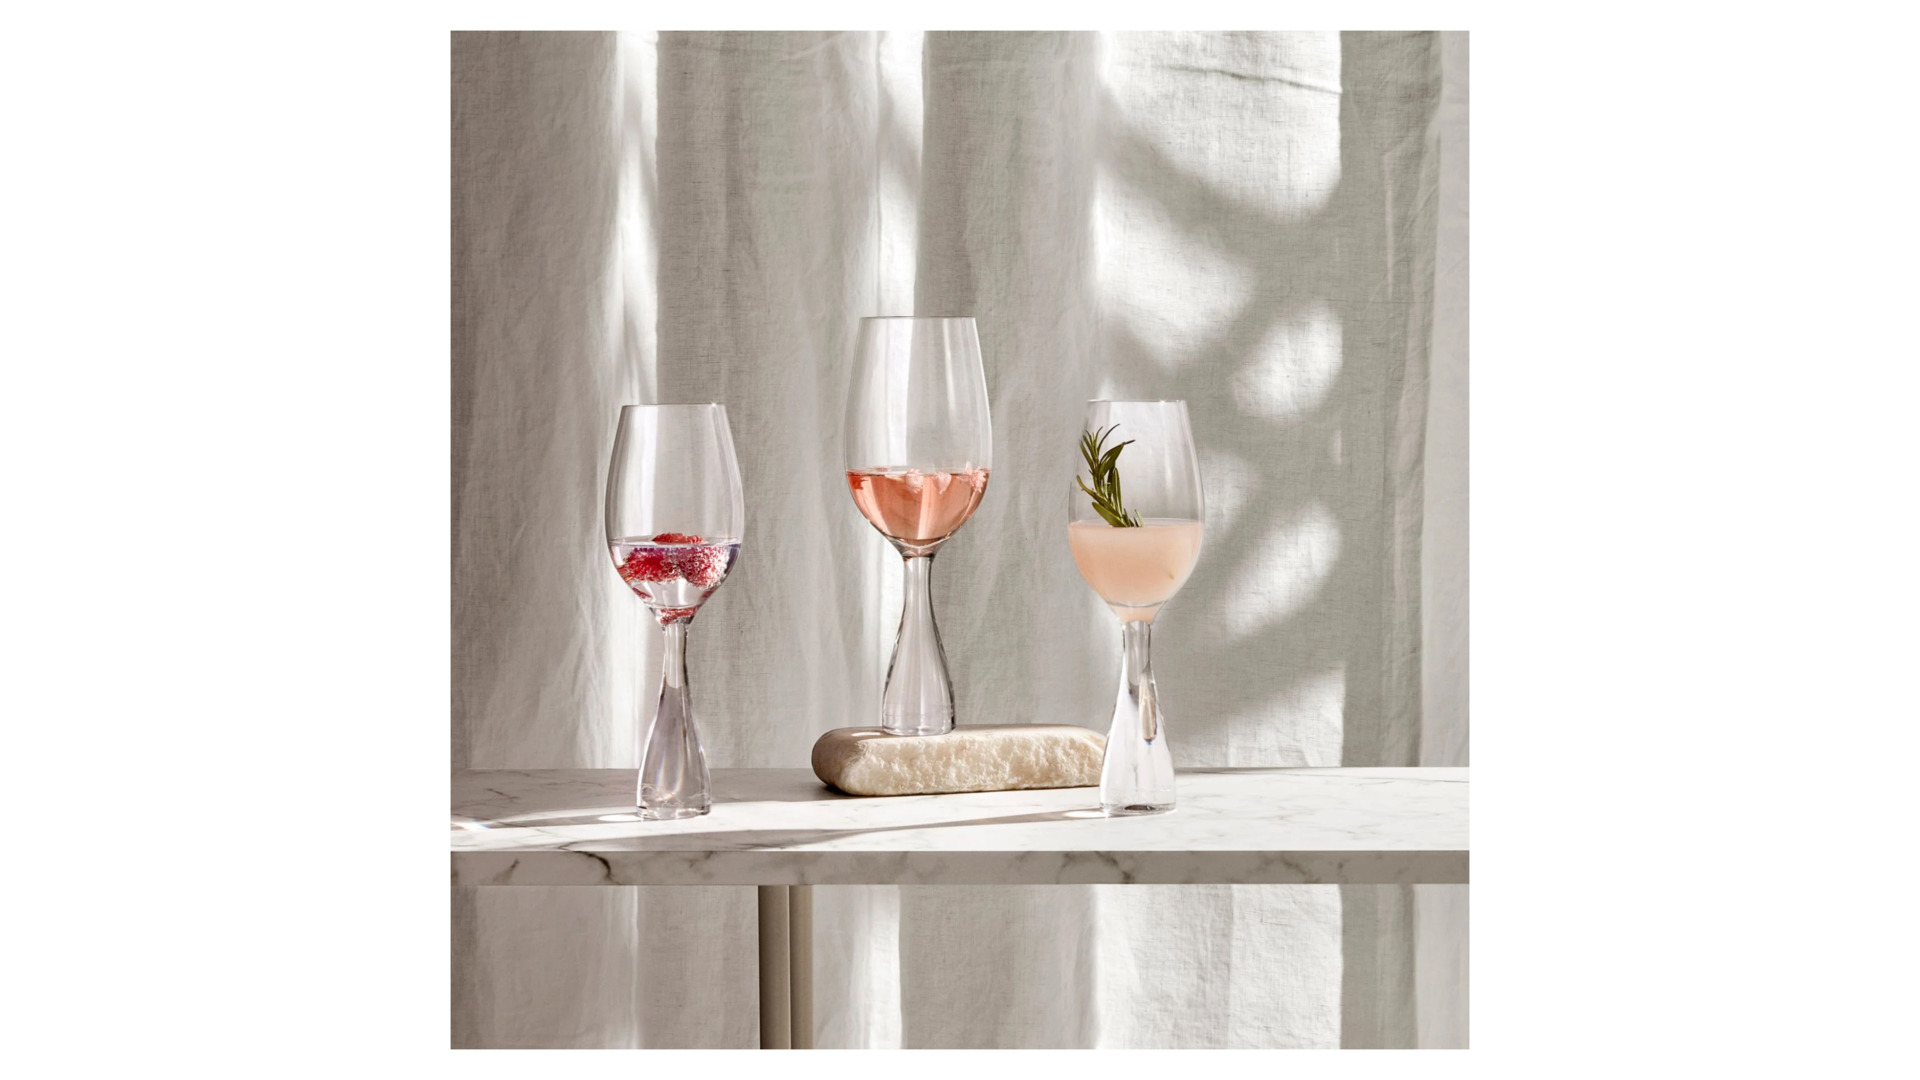 Набор бокалов для красного вина Nude Glass Wine Party 550 мл, 2 шт, стекло хрустальное